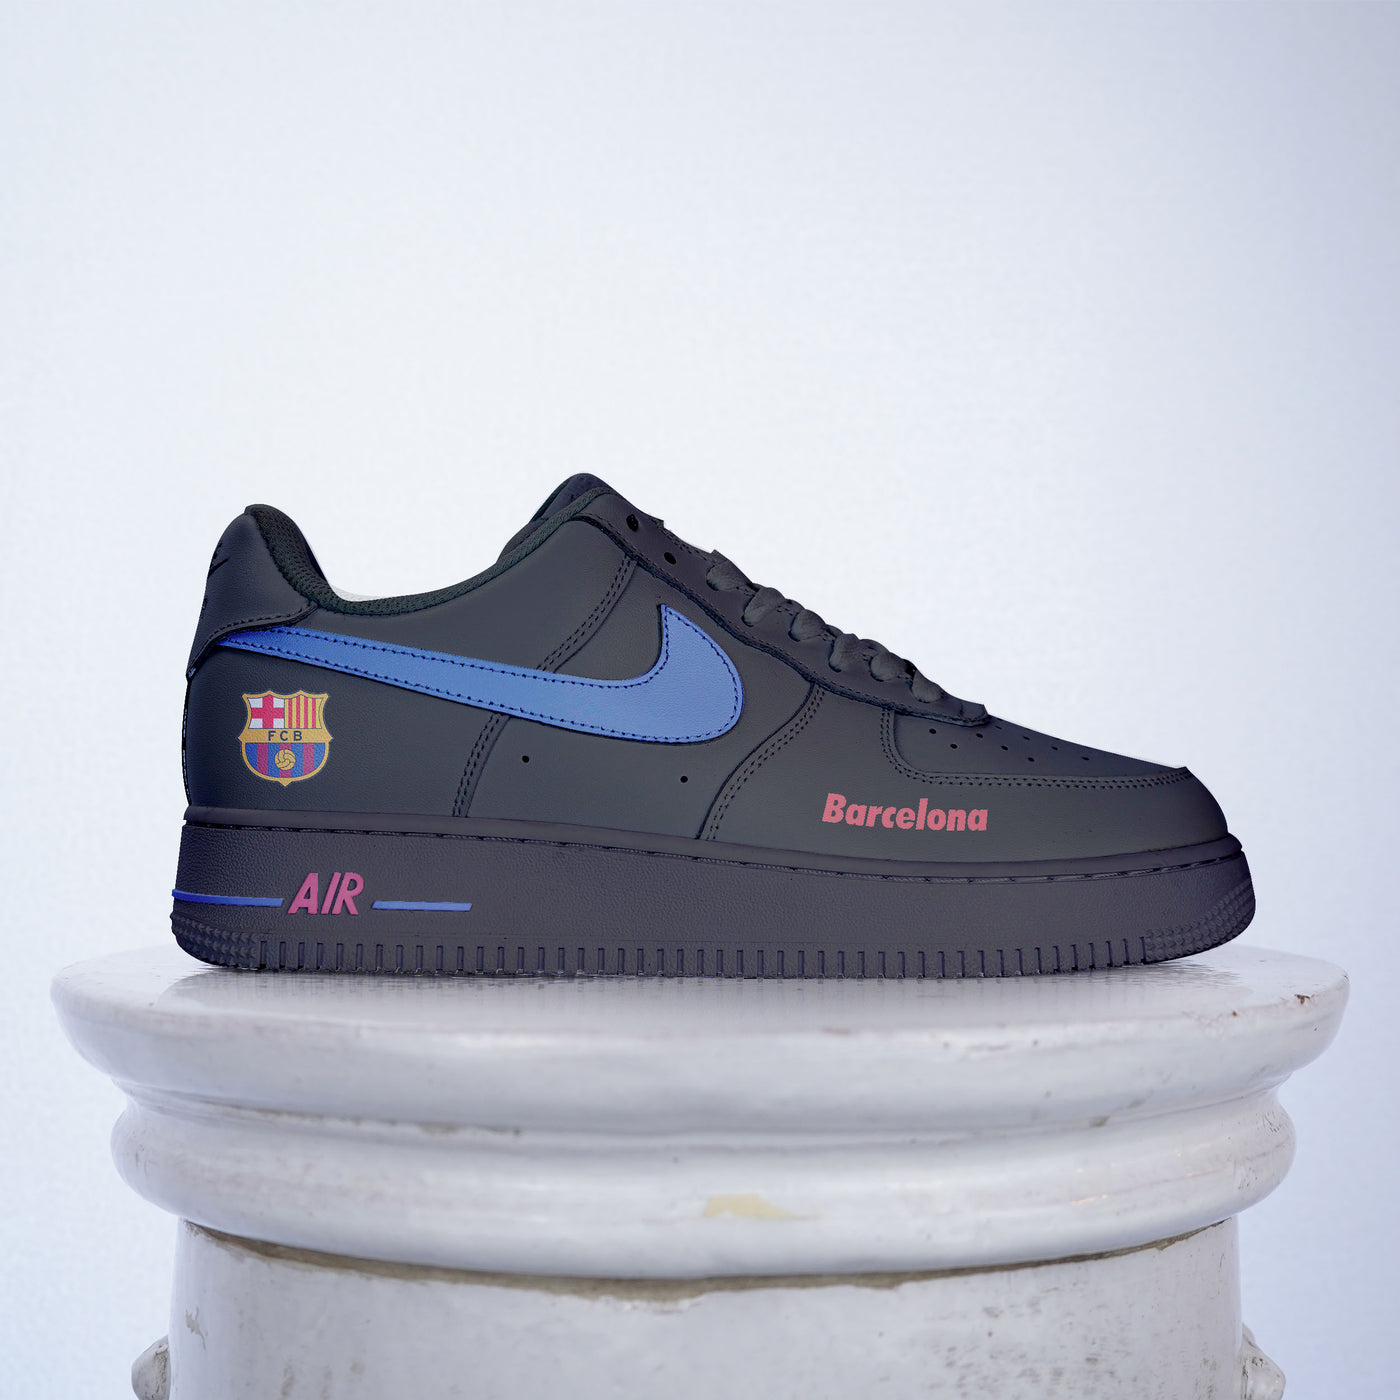 Barcelona sneakers